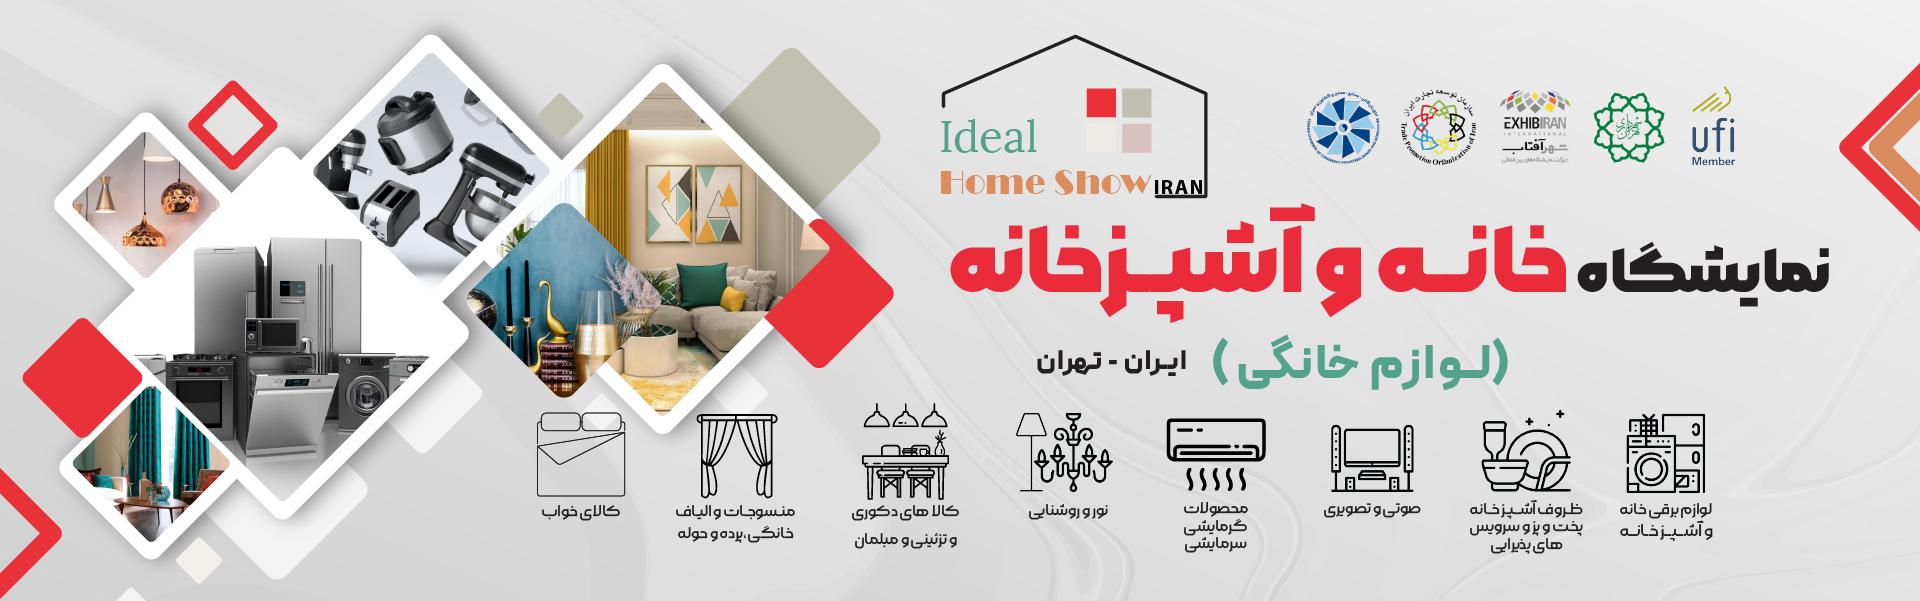 نمایشگاه لوازم خانگی تهران ایران (خانه و آشپزخانه)